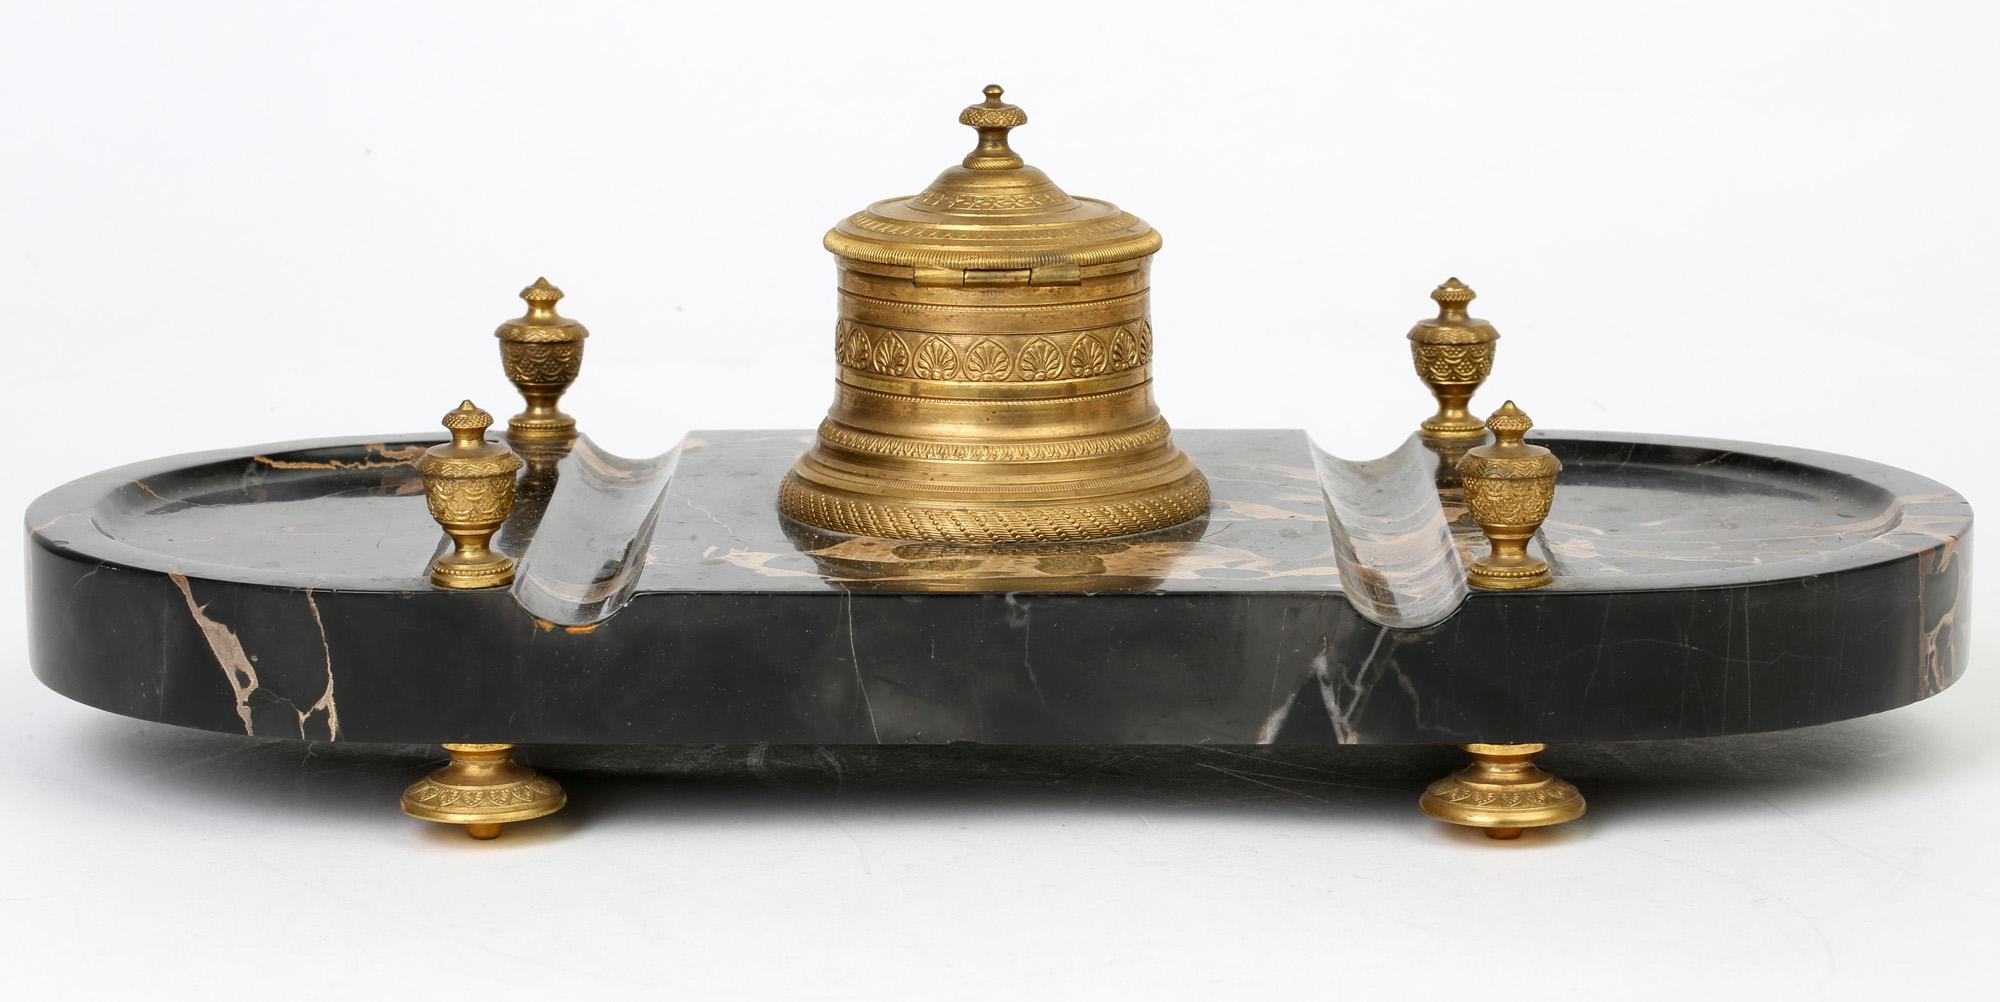 Une superbe table de bureau de style Empire en marbre monté en bronze doré datant du 19ème siècle. Cet élégant support est de forme rectangulaire avec des extrémités polies arrondies et est fabriqué à partir d'une épaisse section polie de marbre